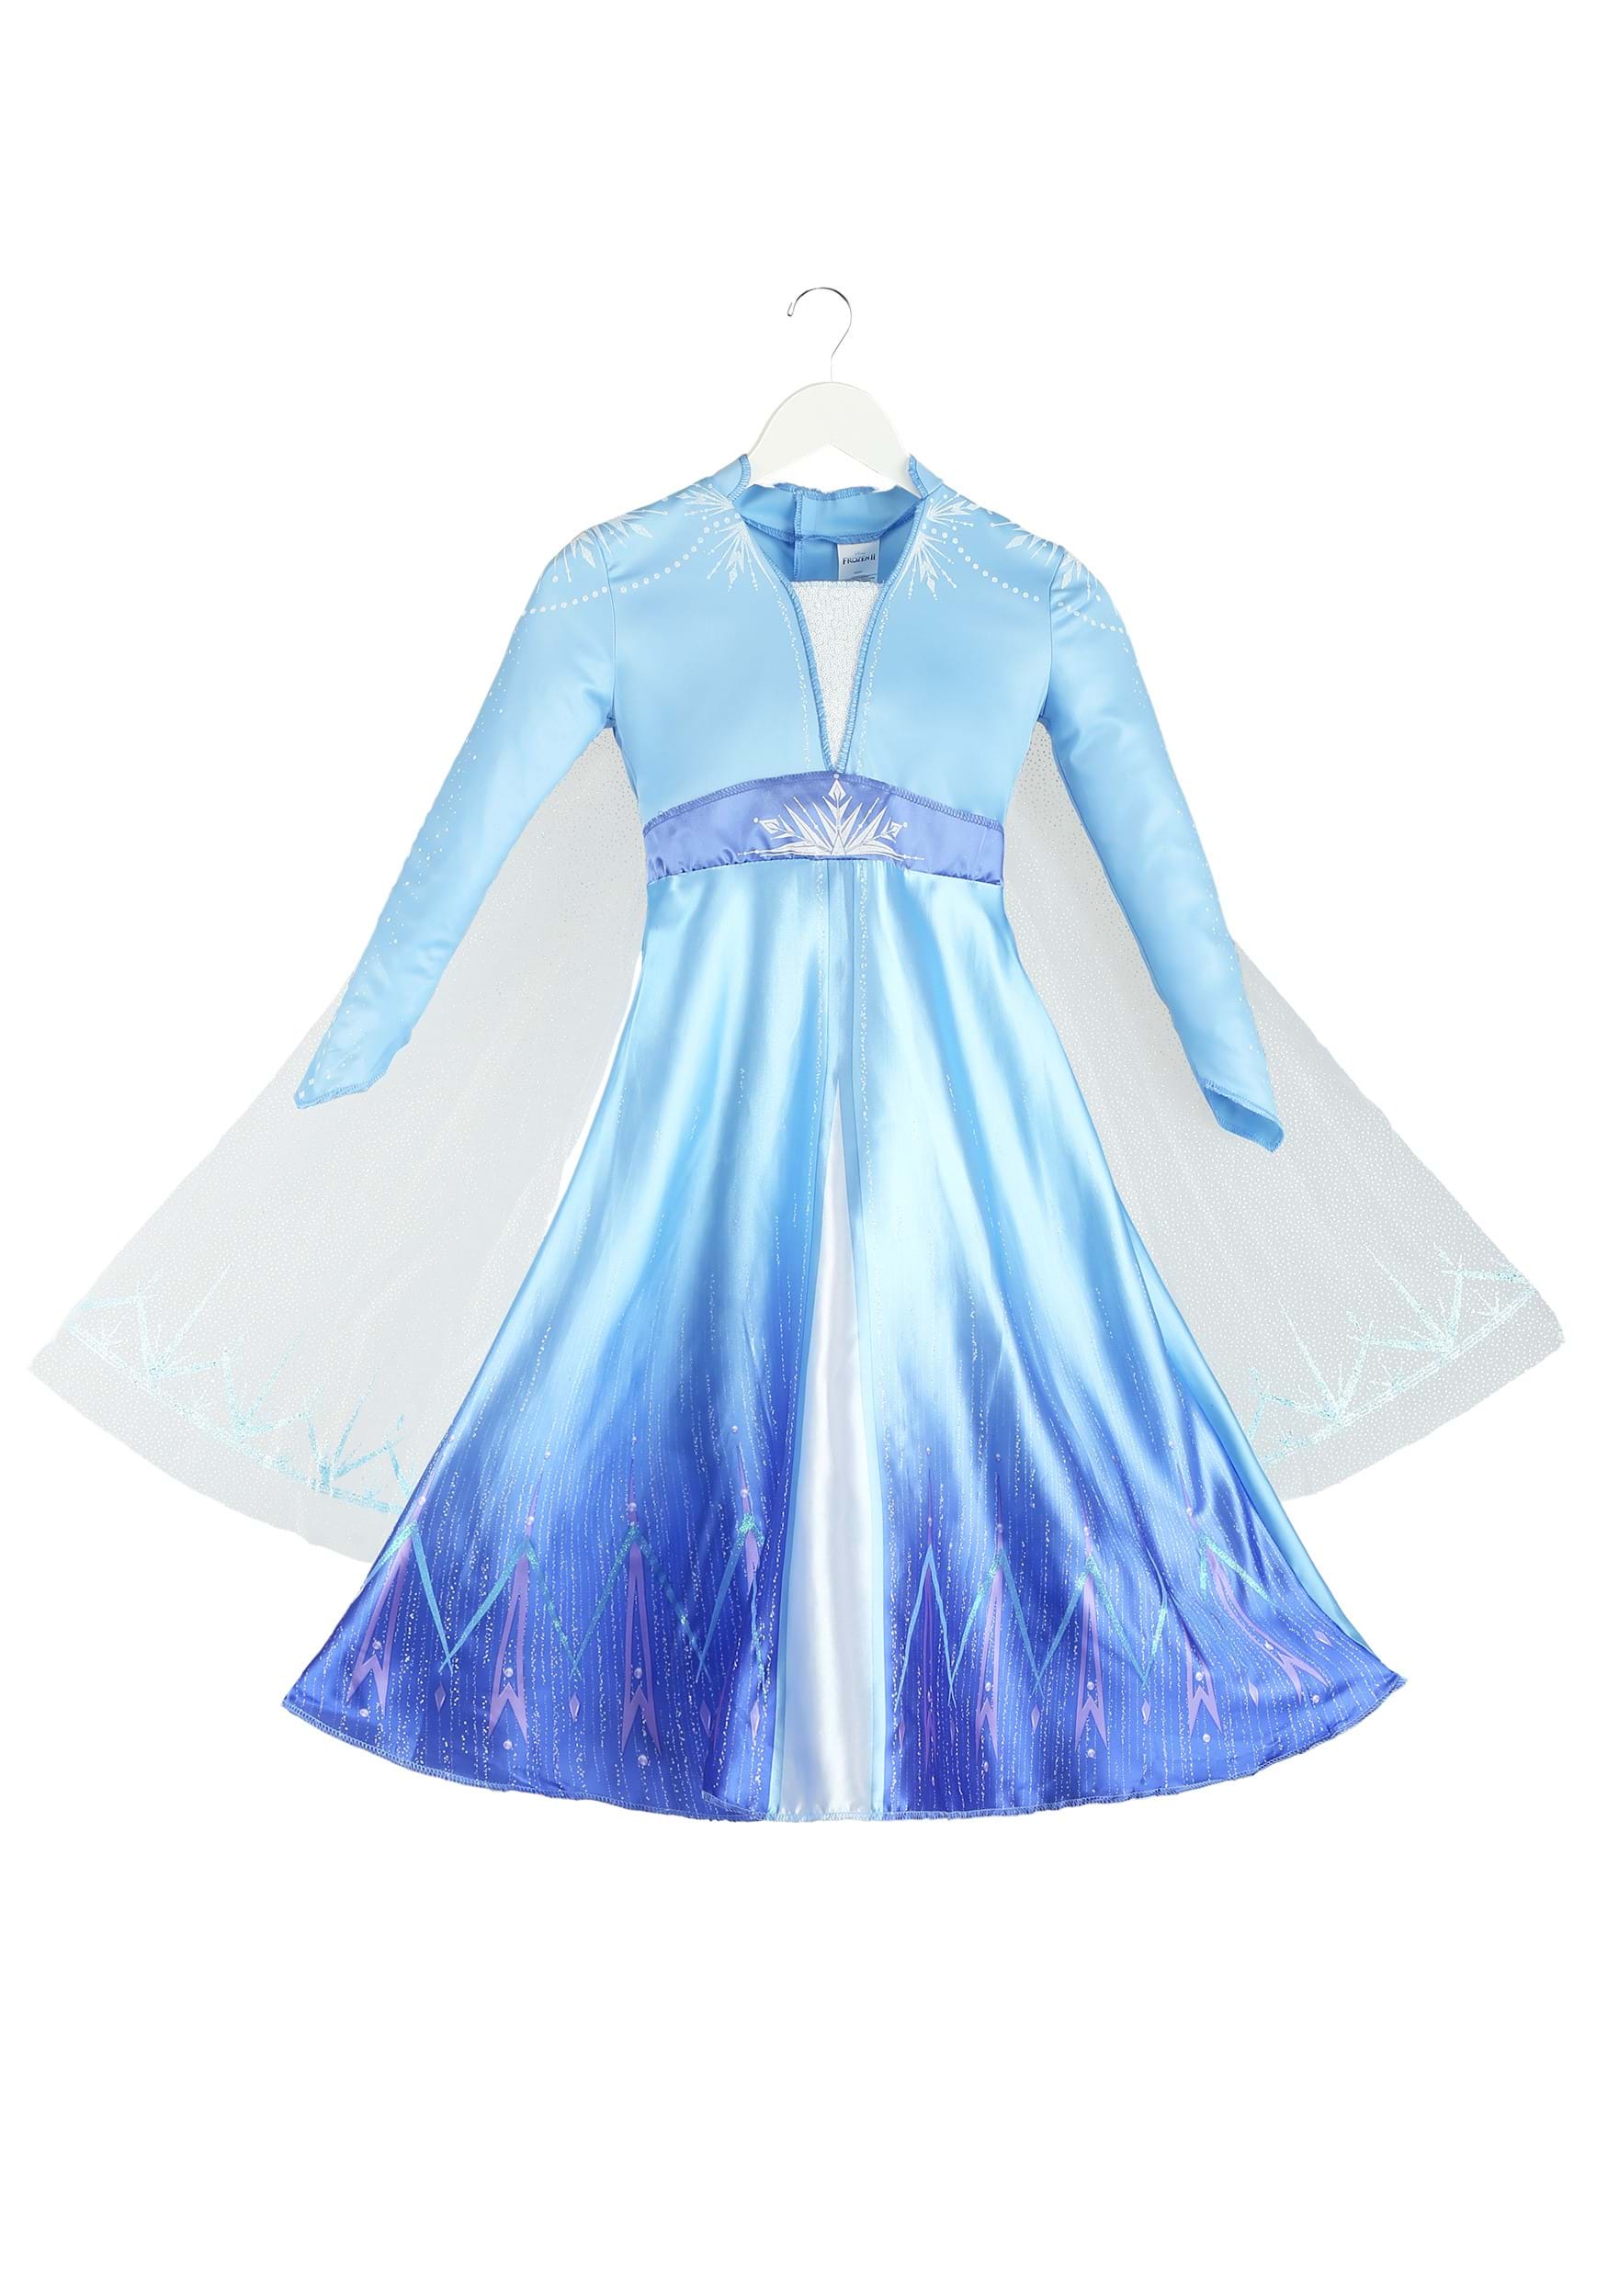 Frozen Fever Anna Elsa Dress | Frozen Fever Birthday Girl Dress